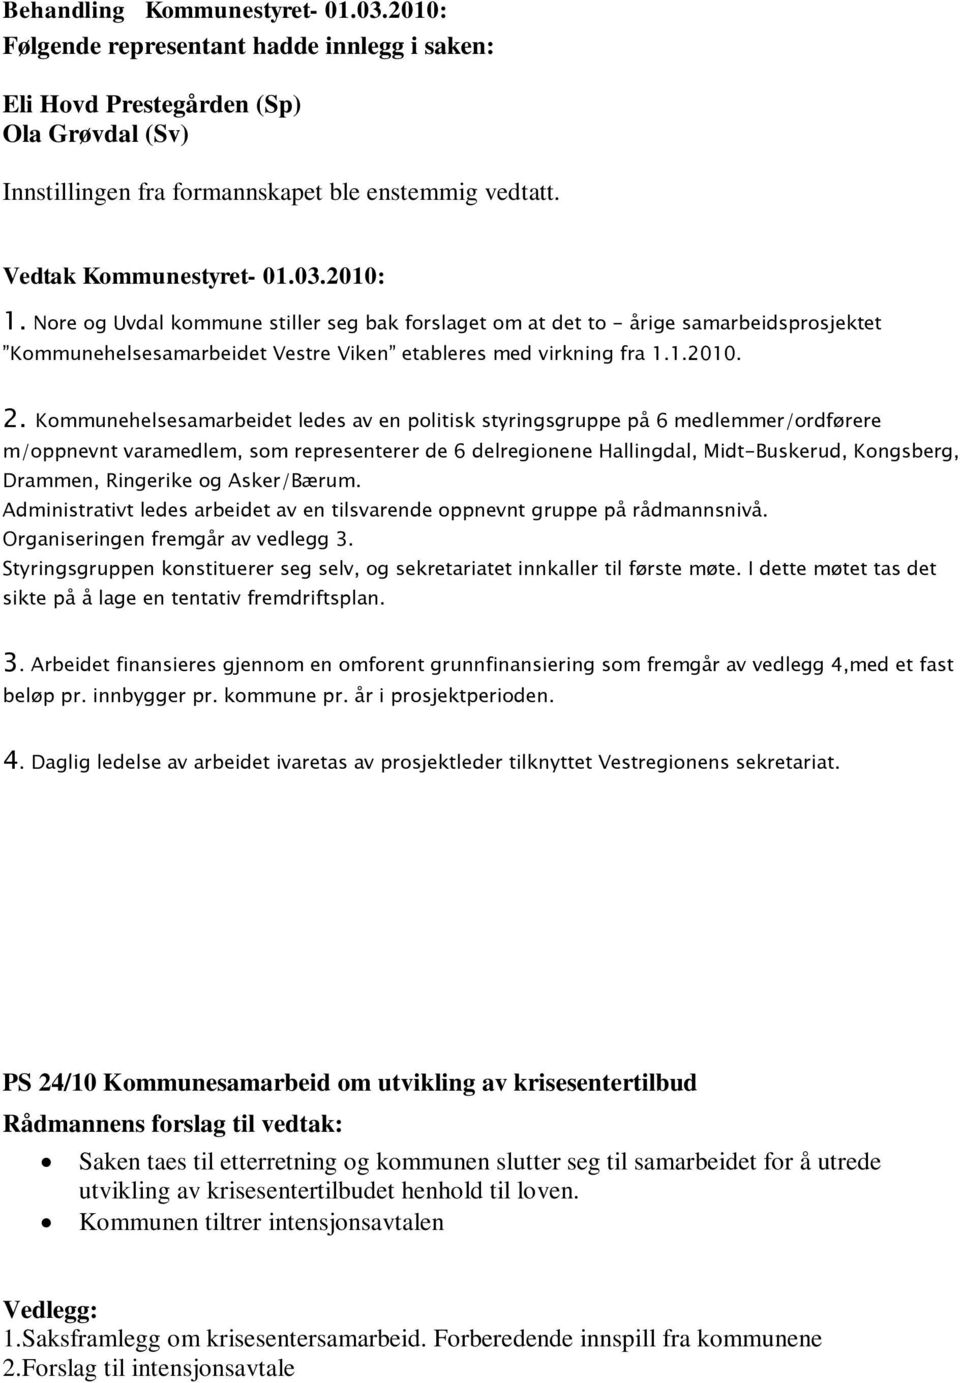 Kommunehelsesamarbeidet ledes av en politisk styringsgruppe på 6 medlemmer/ordførere m/oppnevnt varamedlem, som representerer de 6 delregionene Hallingdal, Midt-Buskerud, Kongsberg, Drammen,